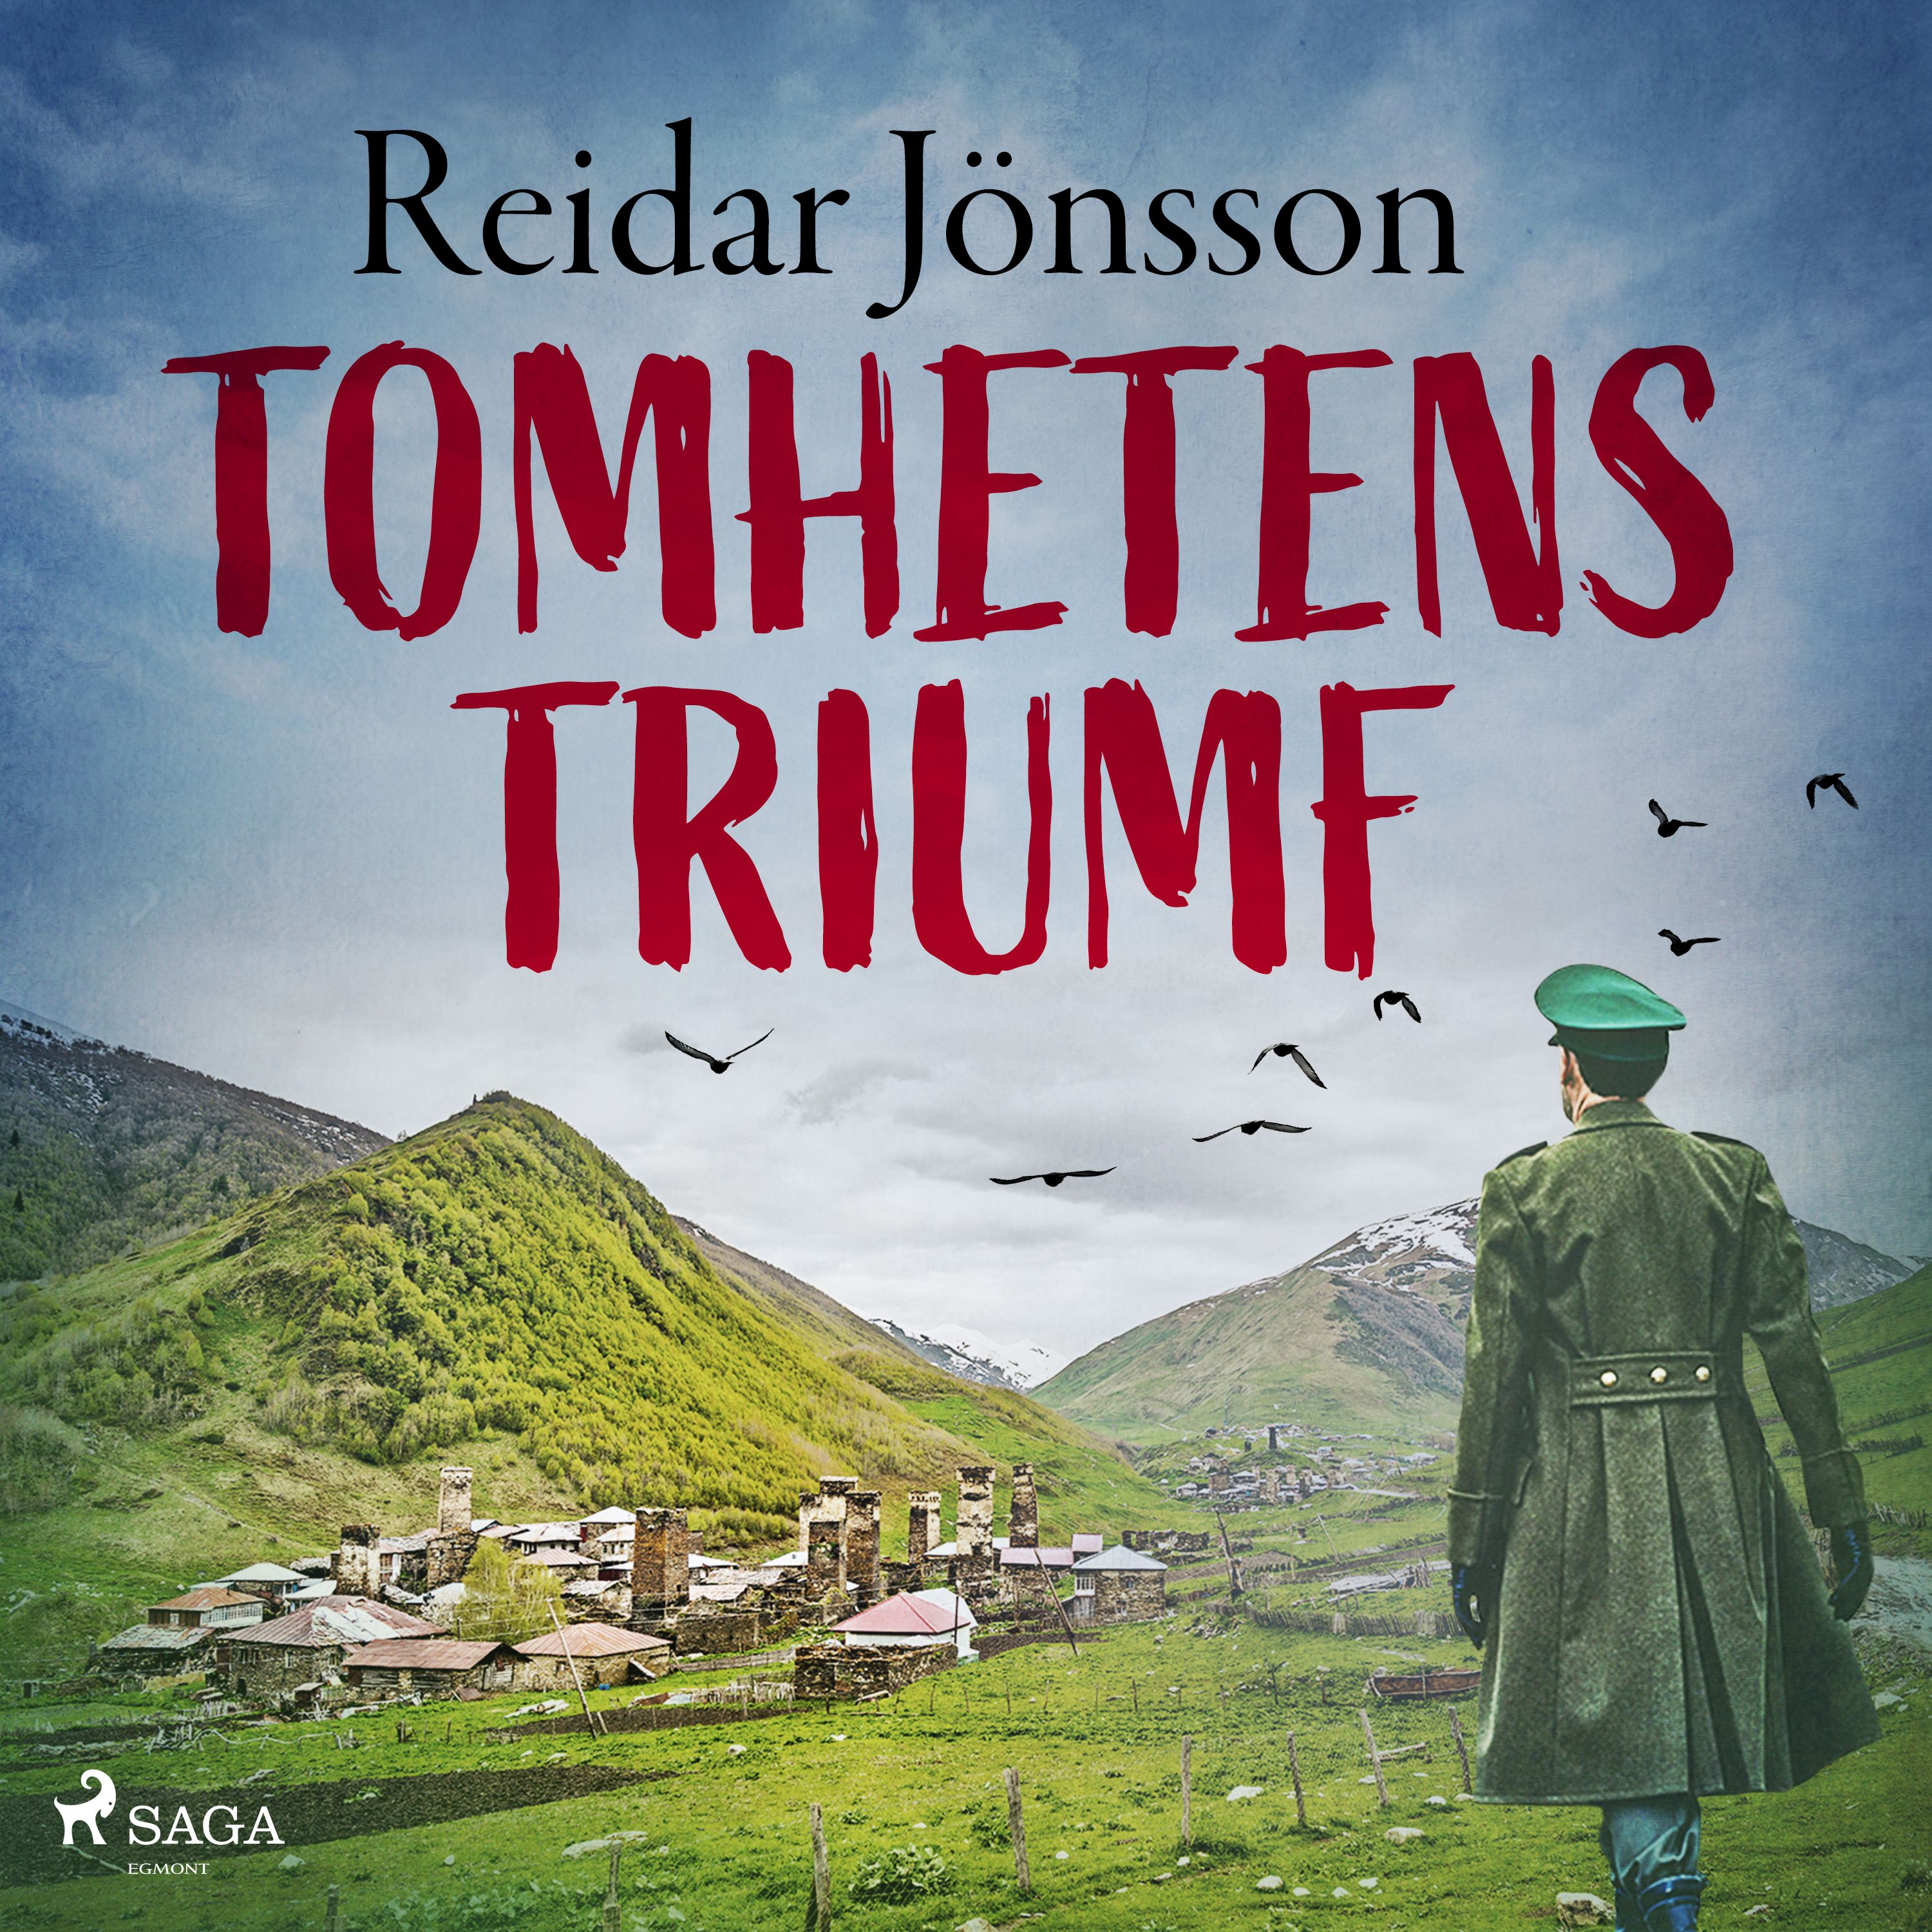 Tomhetens triumf, ljudbok av Reidar Jönsson